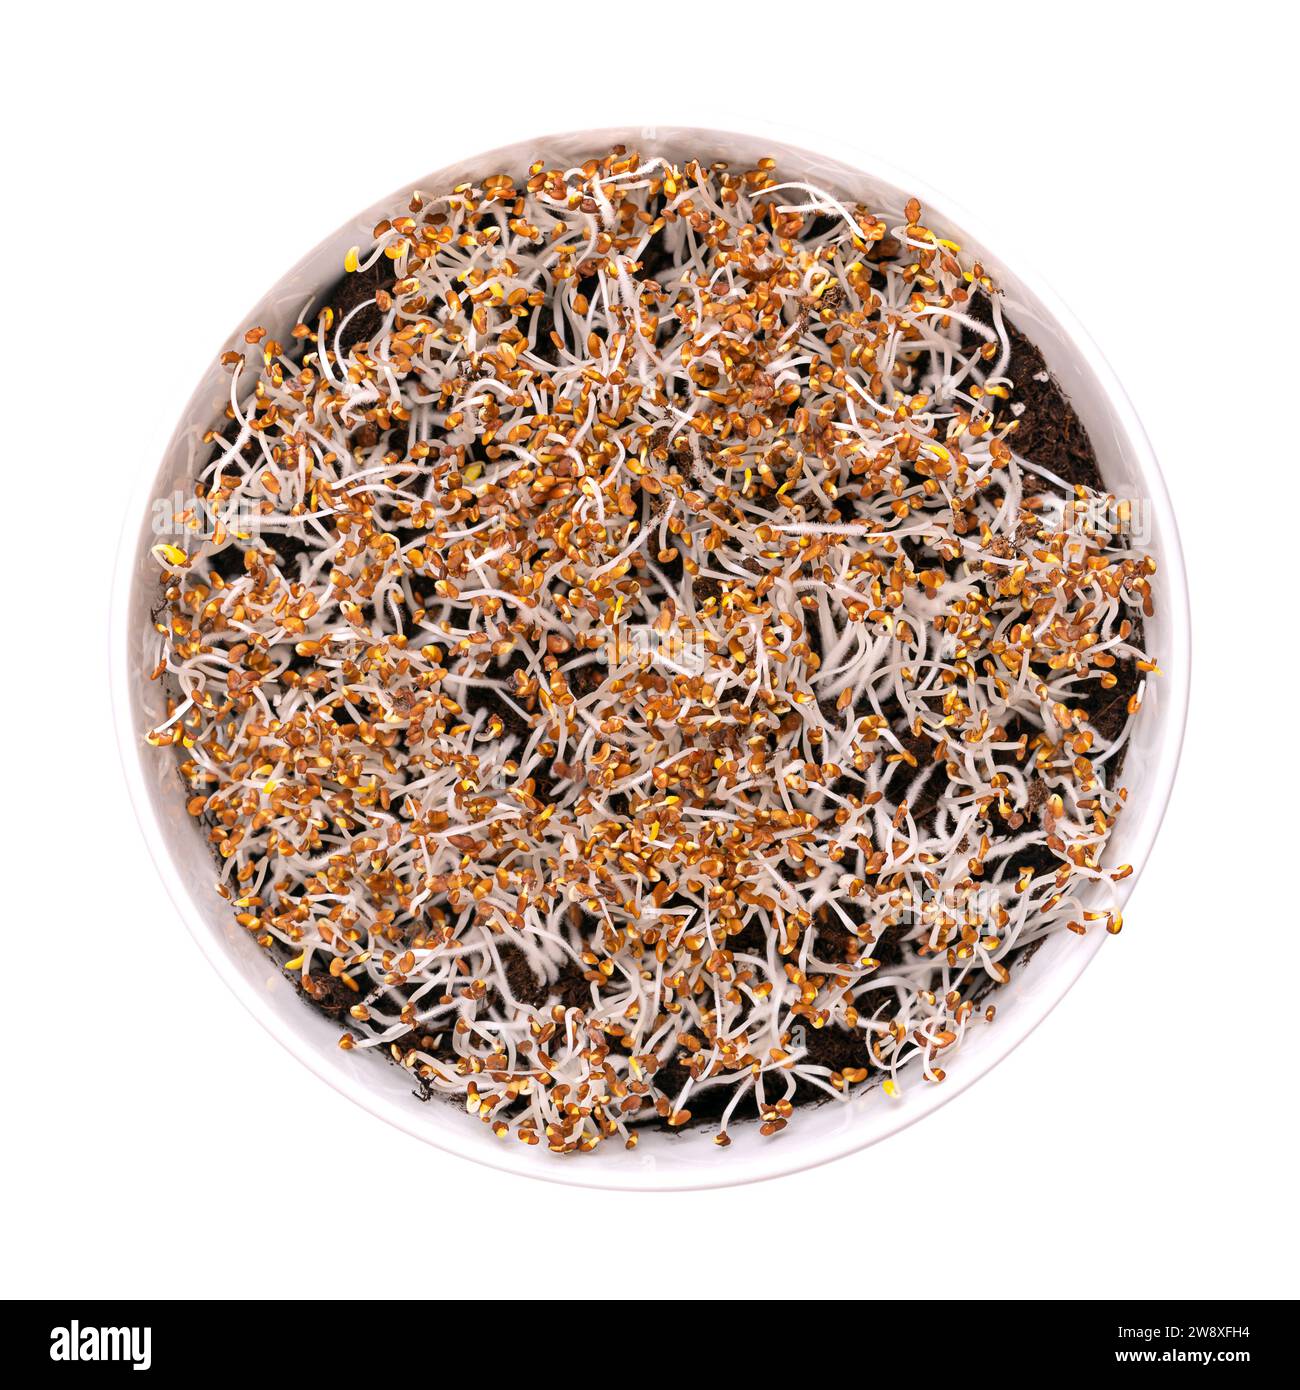 Germes de luzerne germant sur le sol humus, dans un bol blanc. Cotylédons de Medicago sativa, avec de petits poils racinaires, souvent confondus avec la moisissure. Banque D'Images